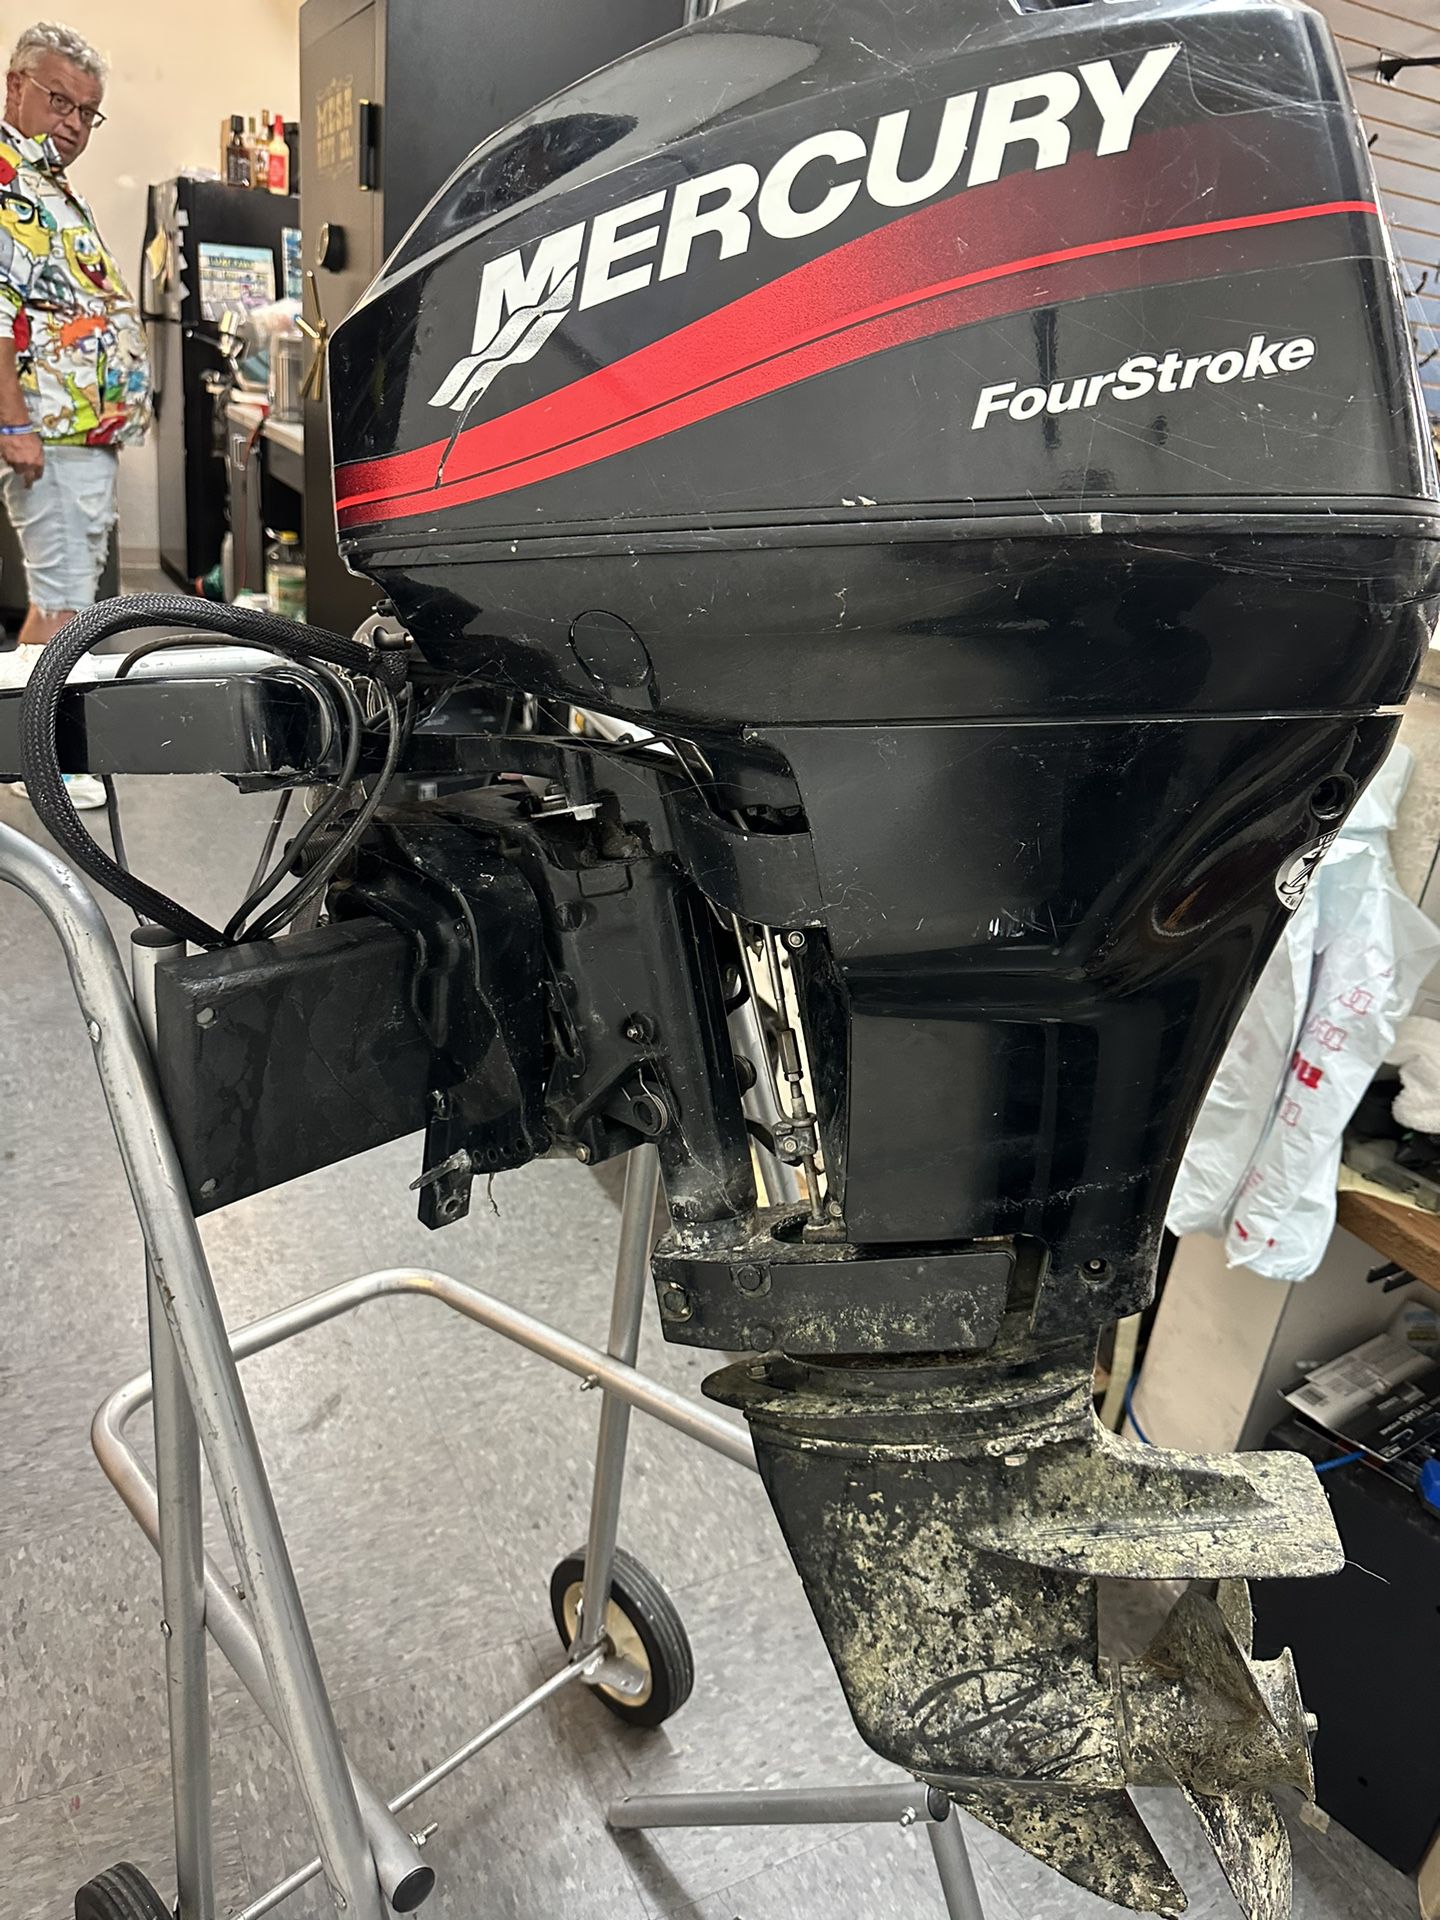 Mercury Four stroke Outboard Motor